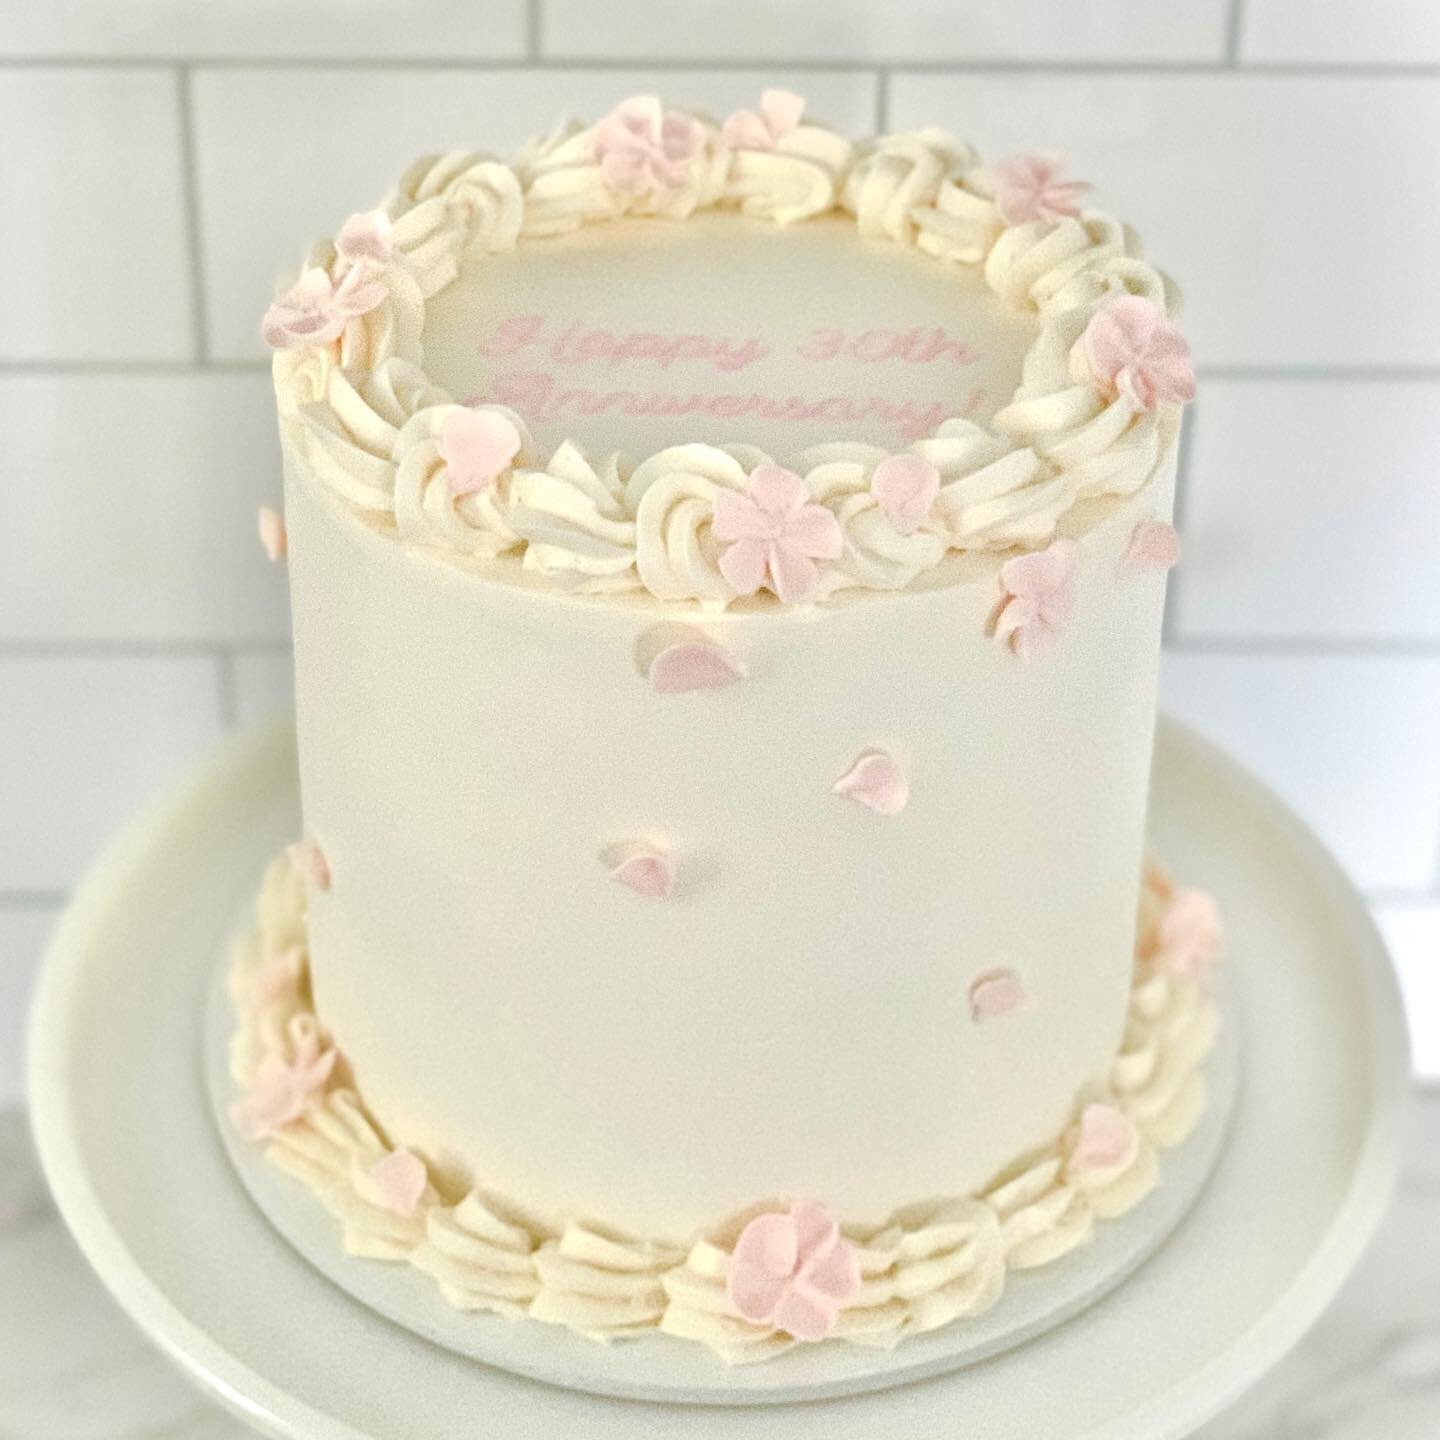 Happy 30th Anniversary! 🥂

Vanilla bean cake with chocolate ganache and buttercream flowers